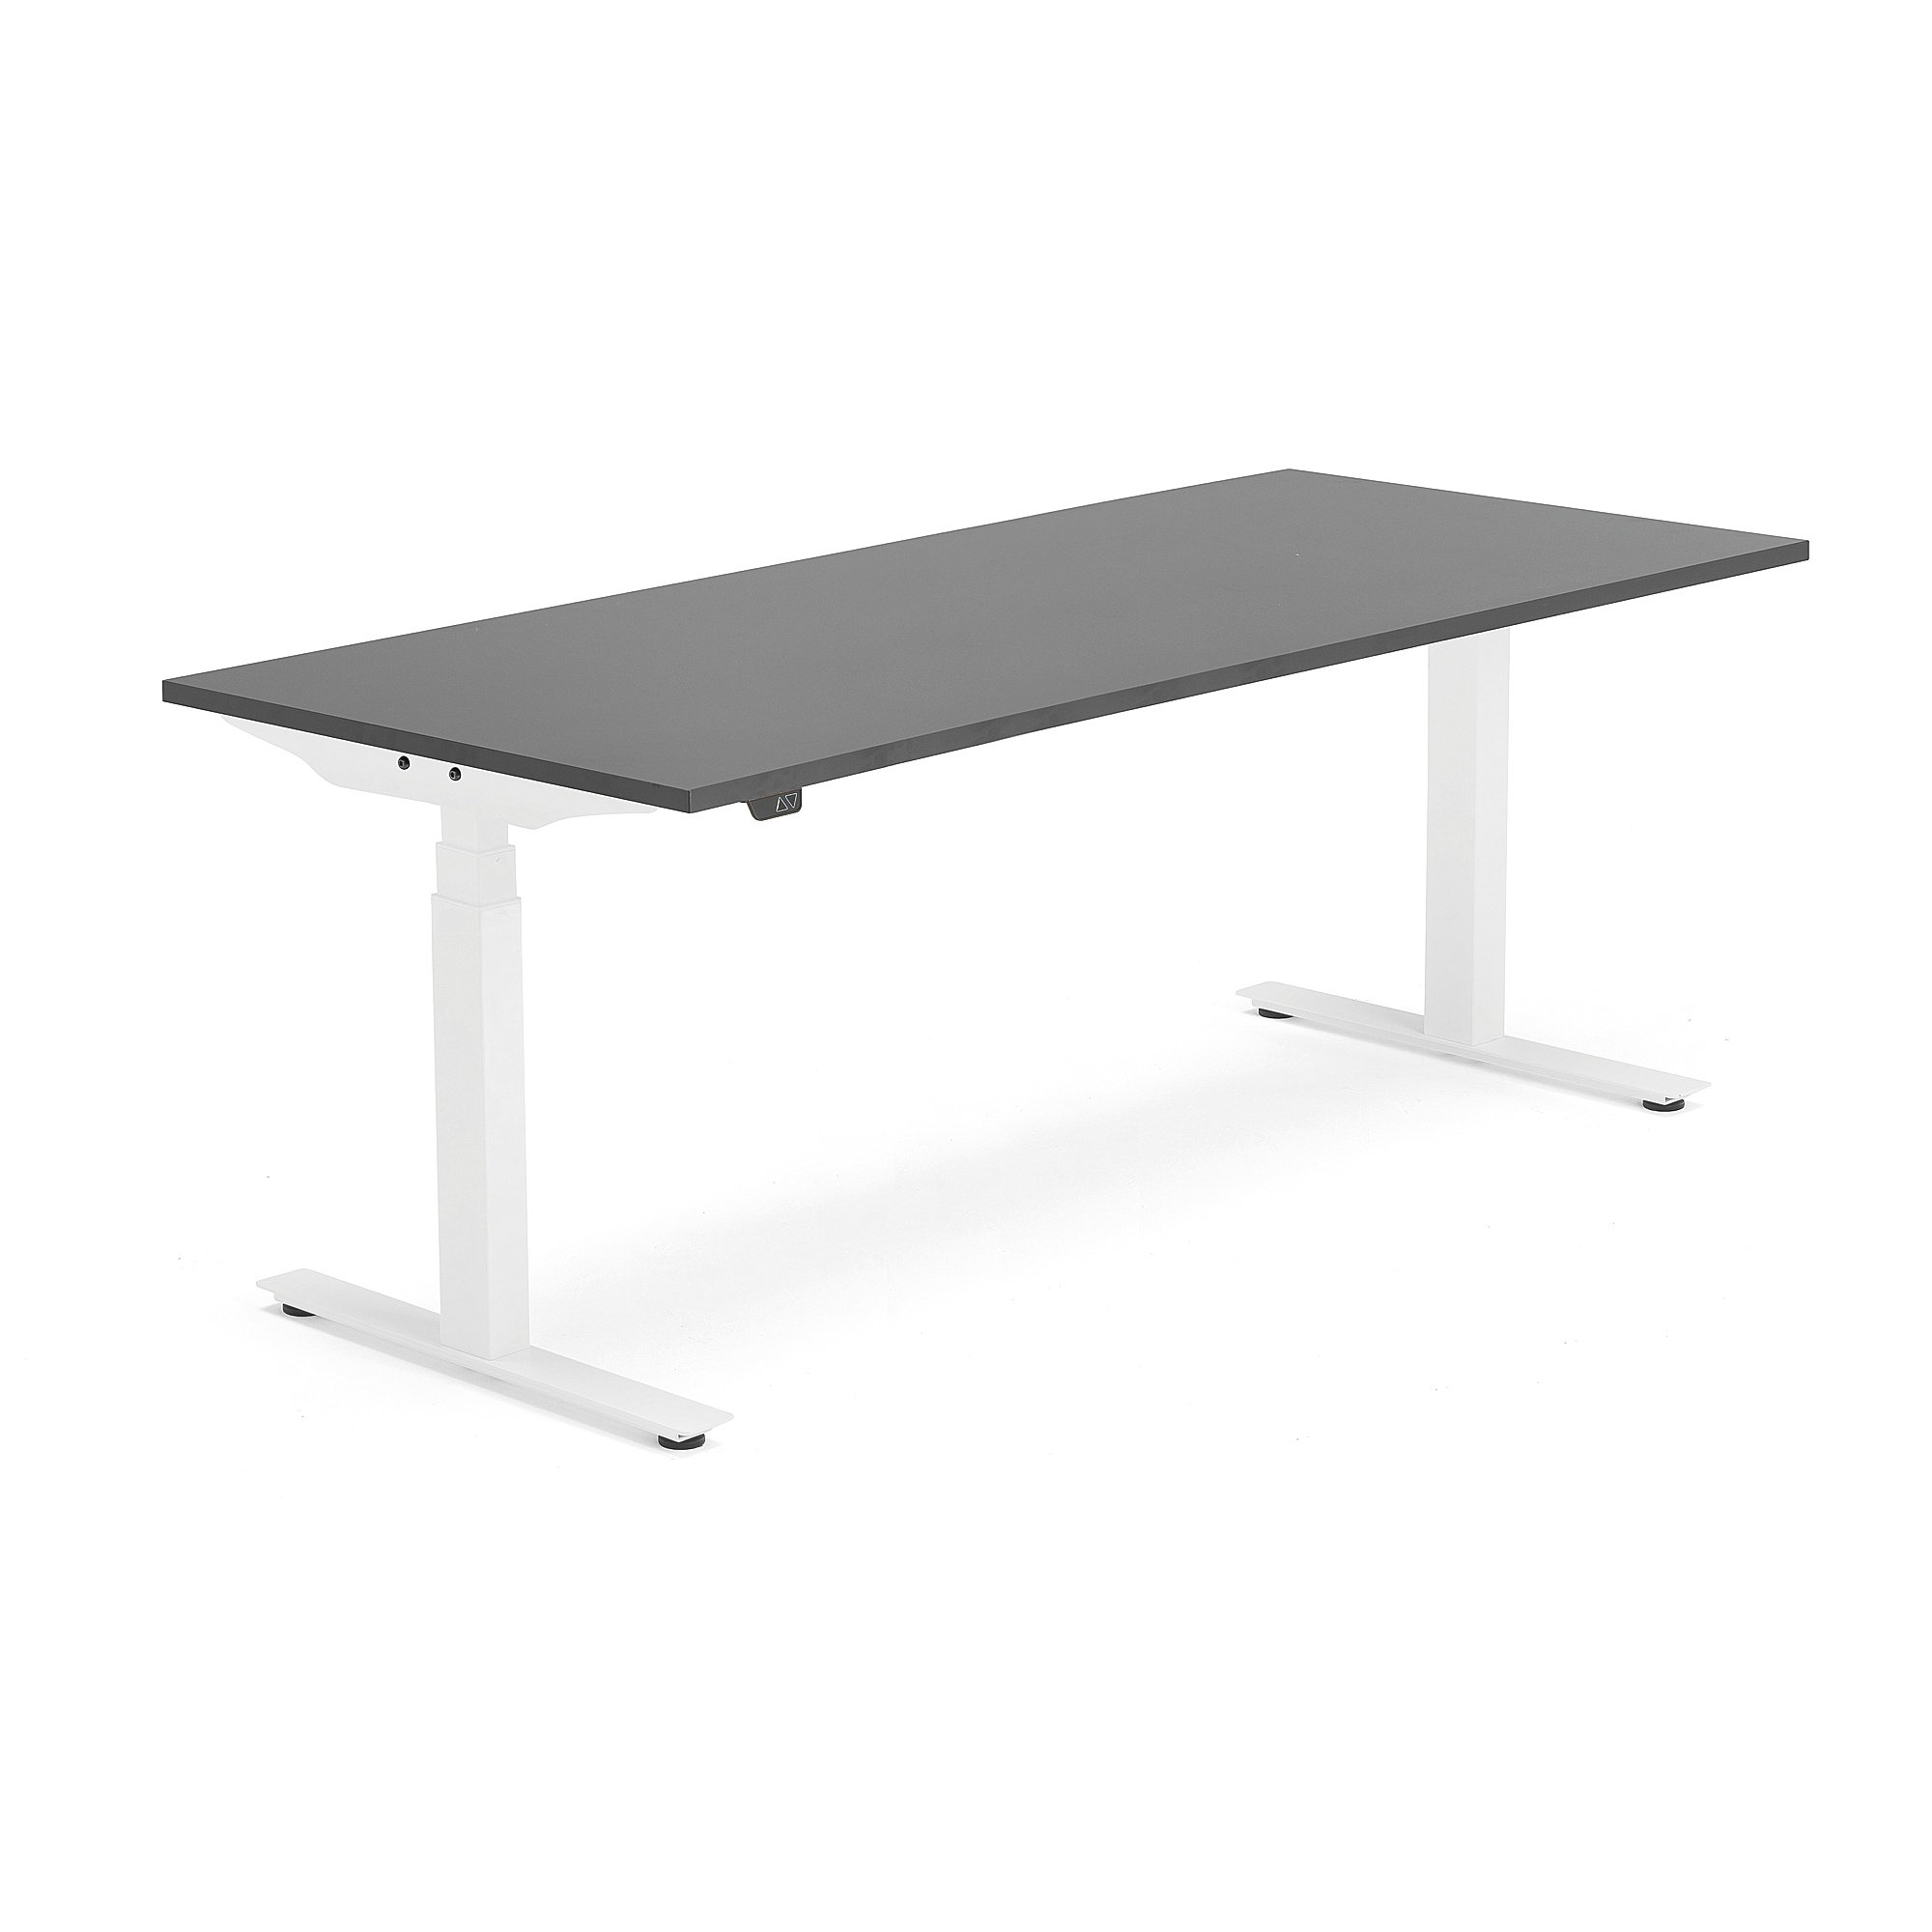 Výškově nastavitelný stůl MODULUS, 1800x800 mm, bílý rám, černá